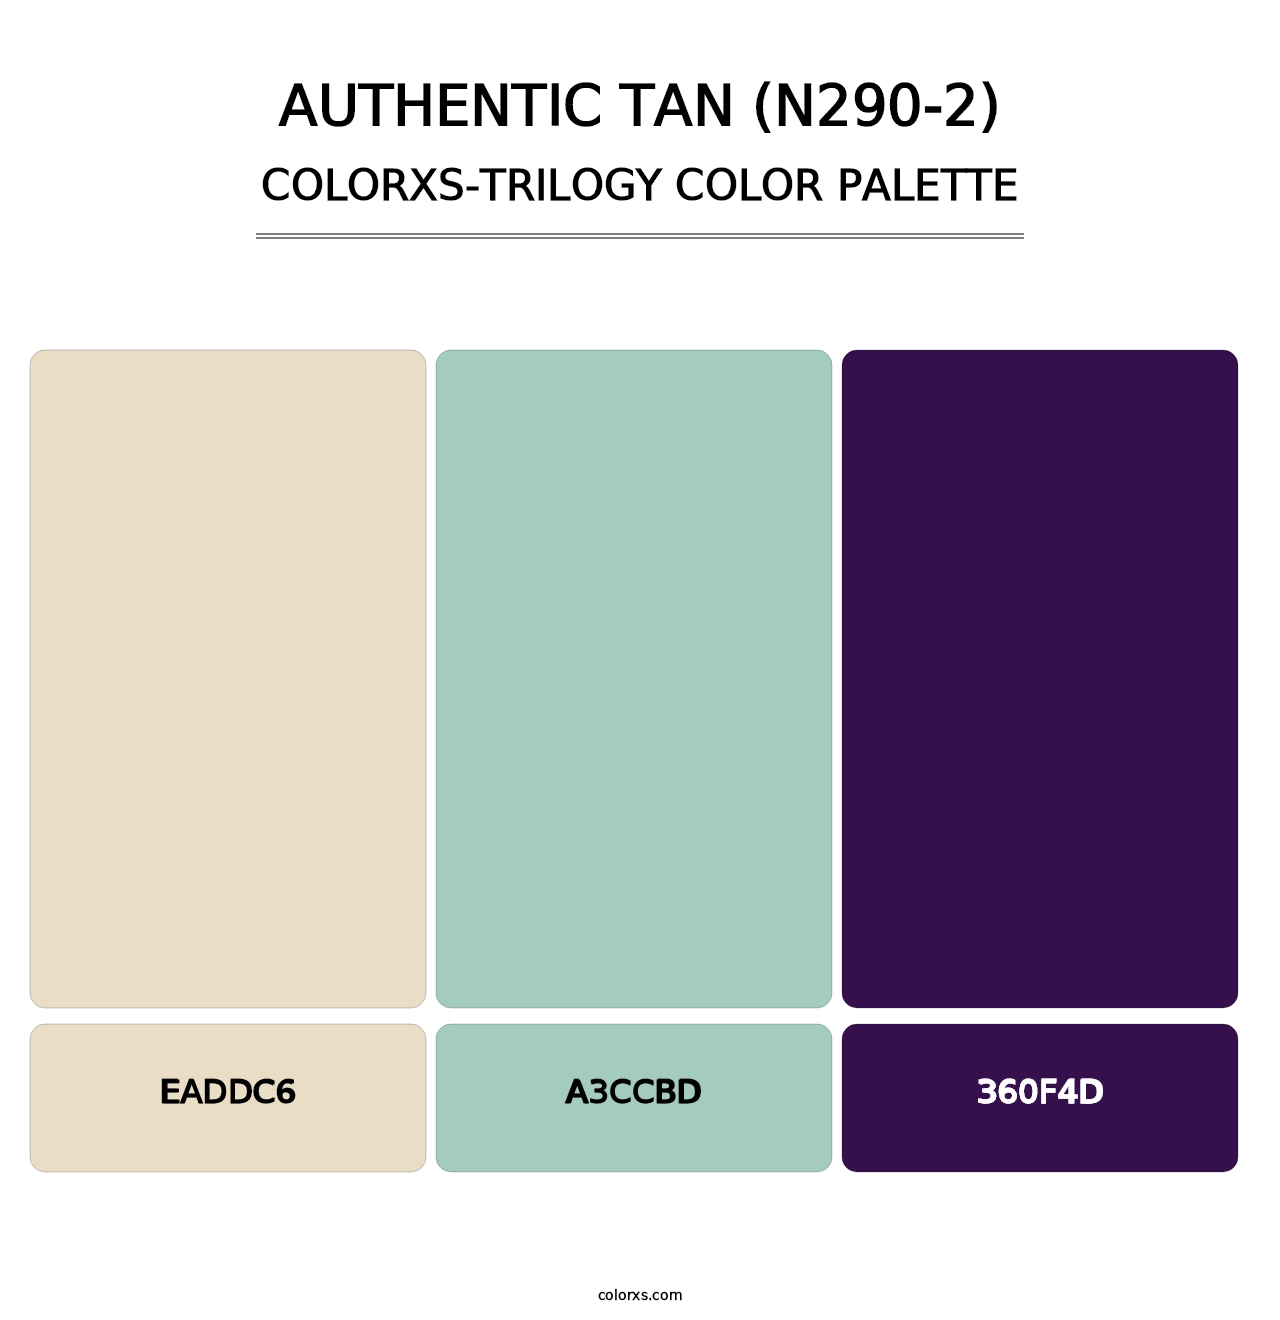 Authentic Tan (N290-2) - Colorxs Trilogy Palette